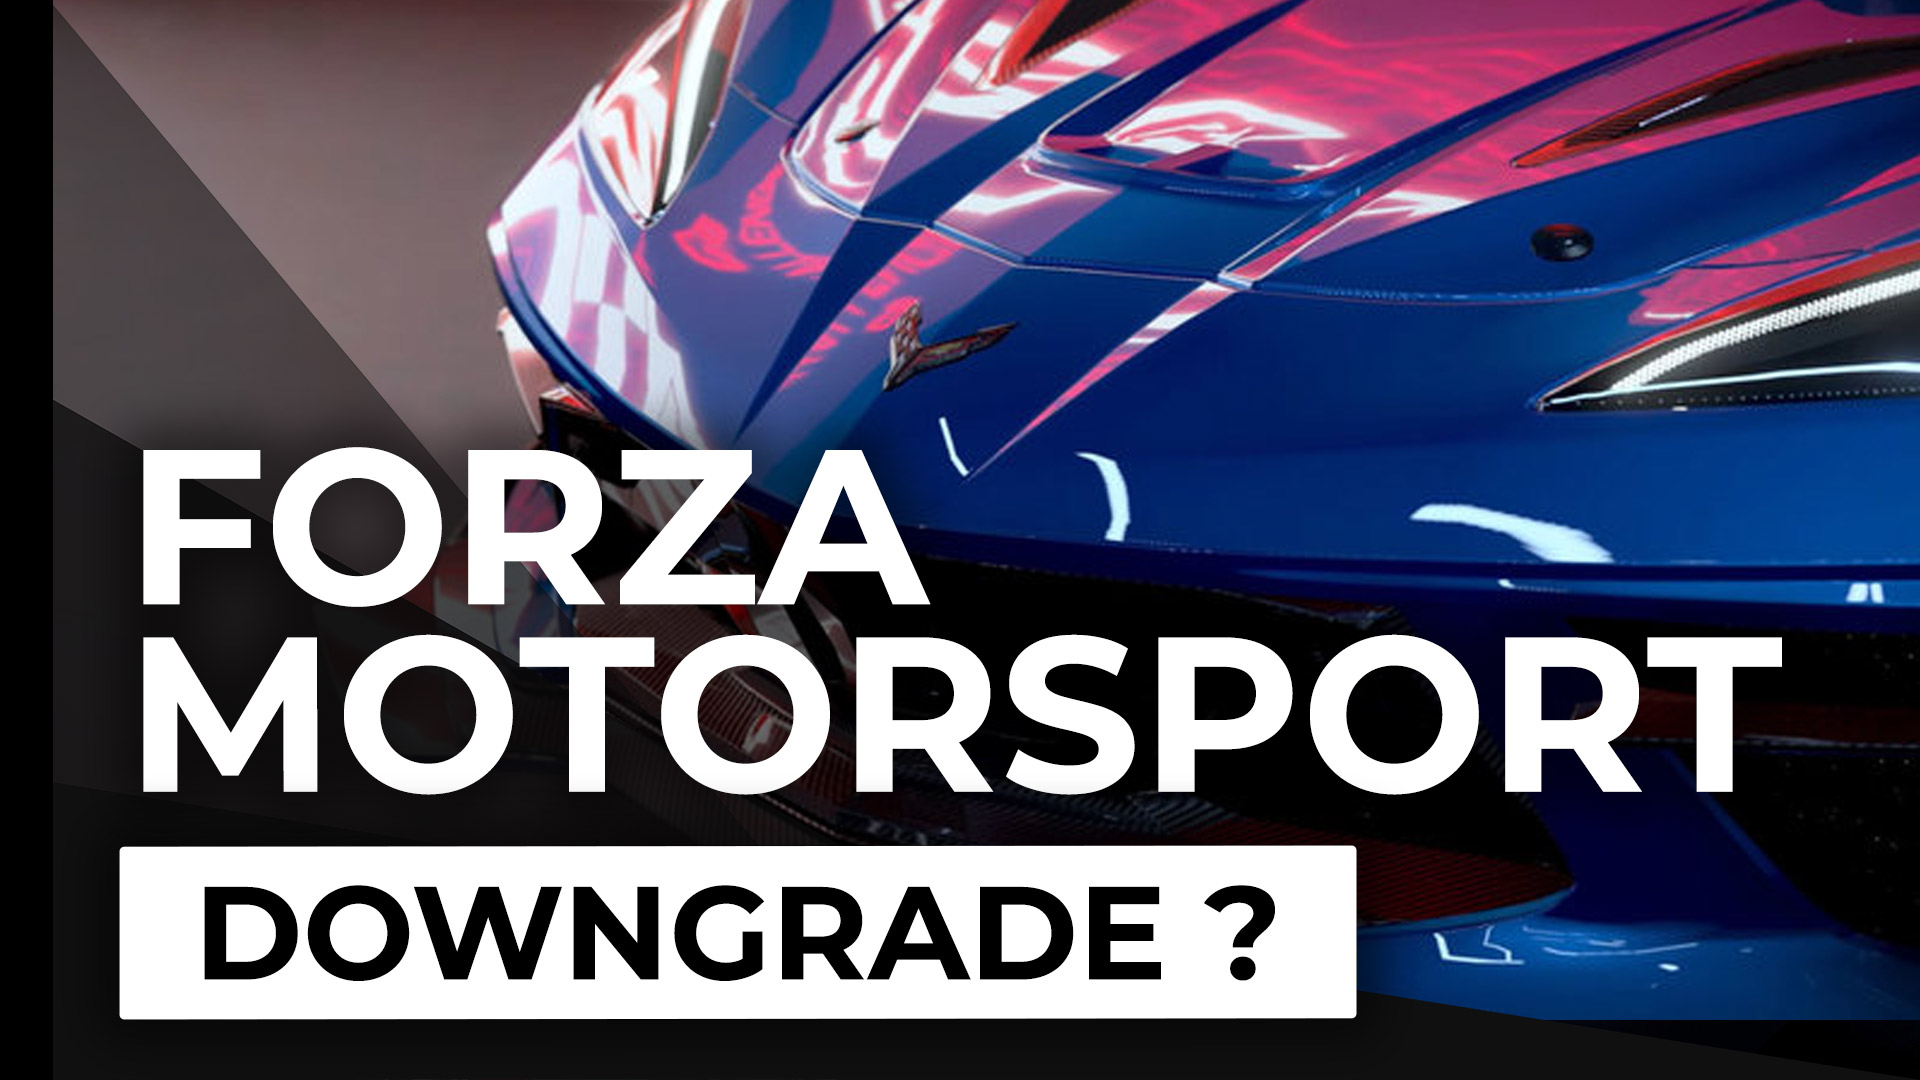 Forza Motorsport: trailer e trailer fuorvianti, Turn10 ha mentito?  |  Xbox One